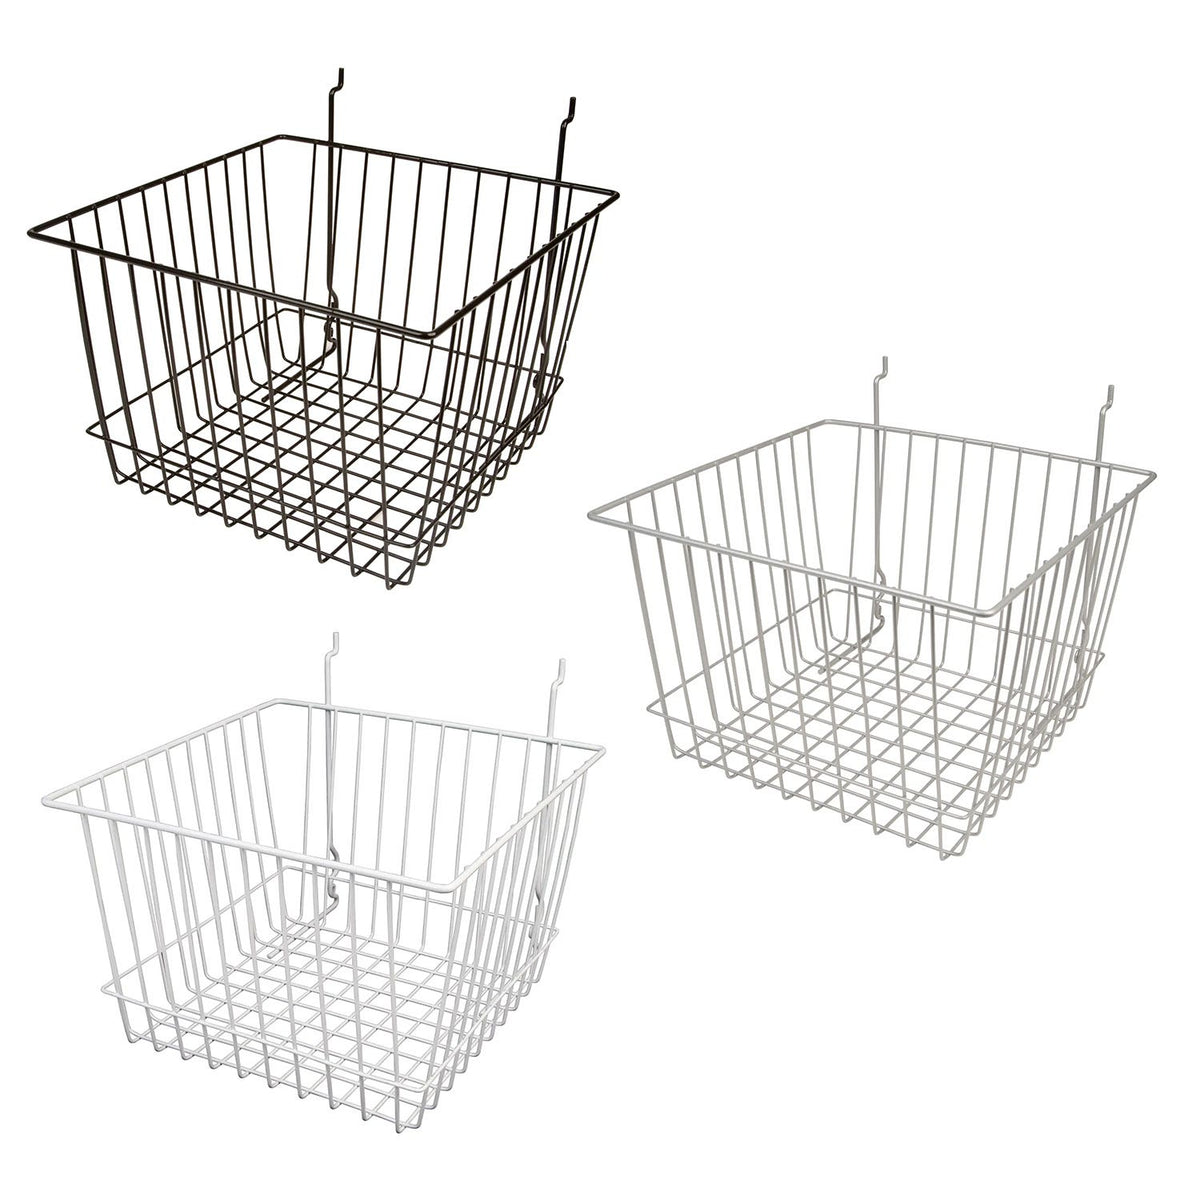 12"W x 12"D x 8"H Deep Basket Fits Grid Panels, Slatwall  Pegboard Bl